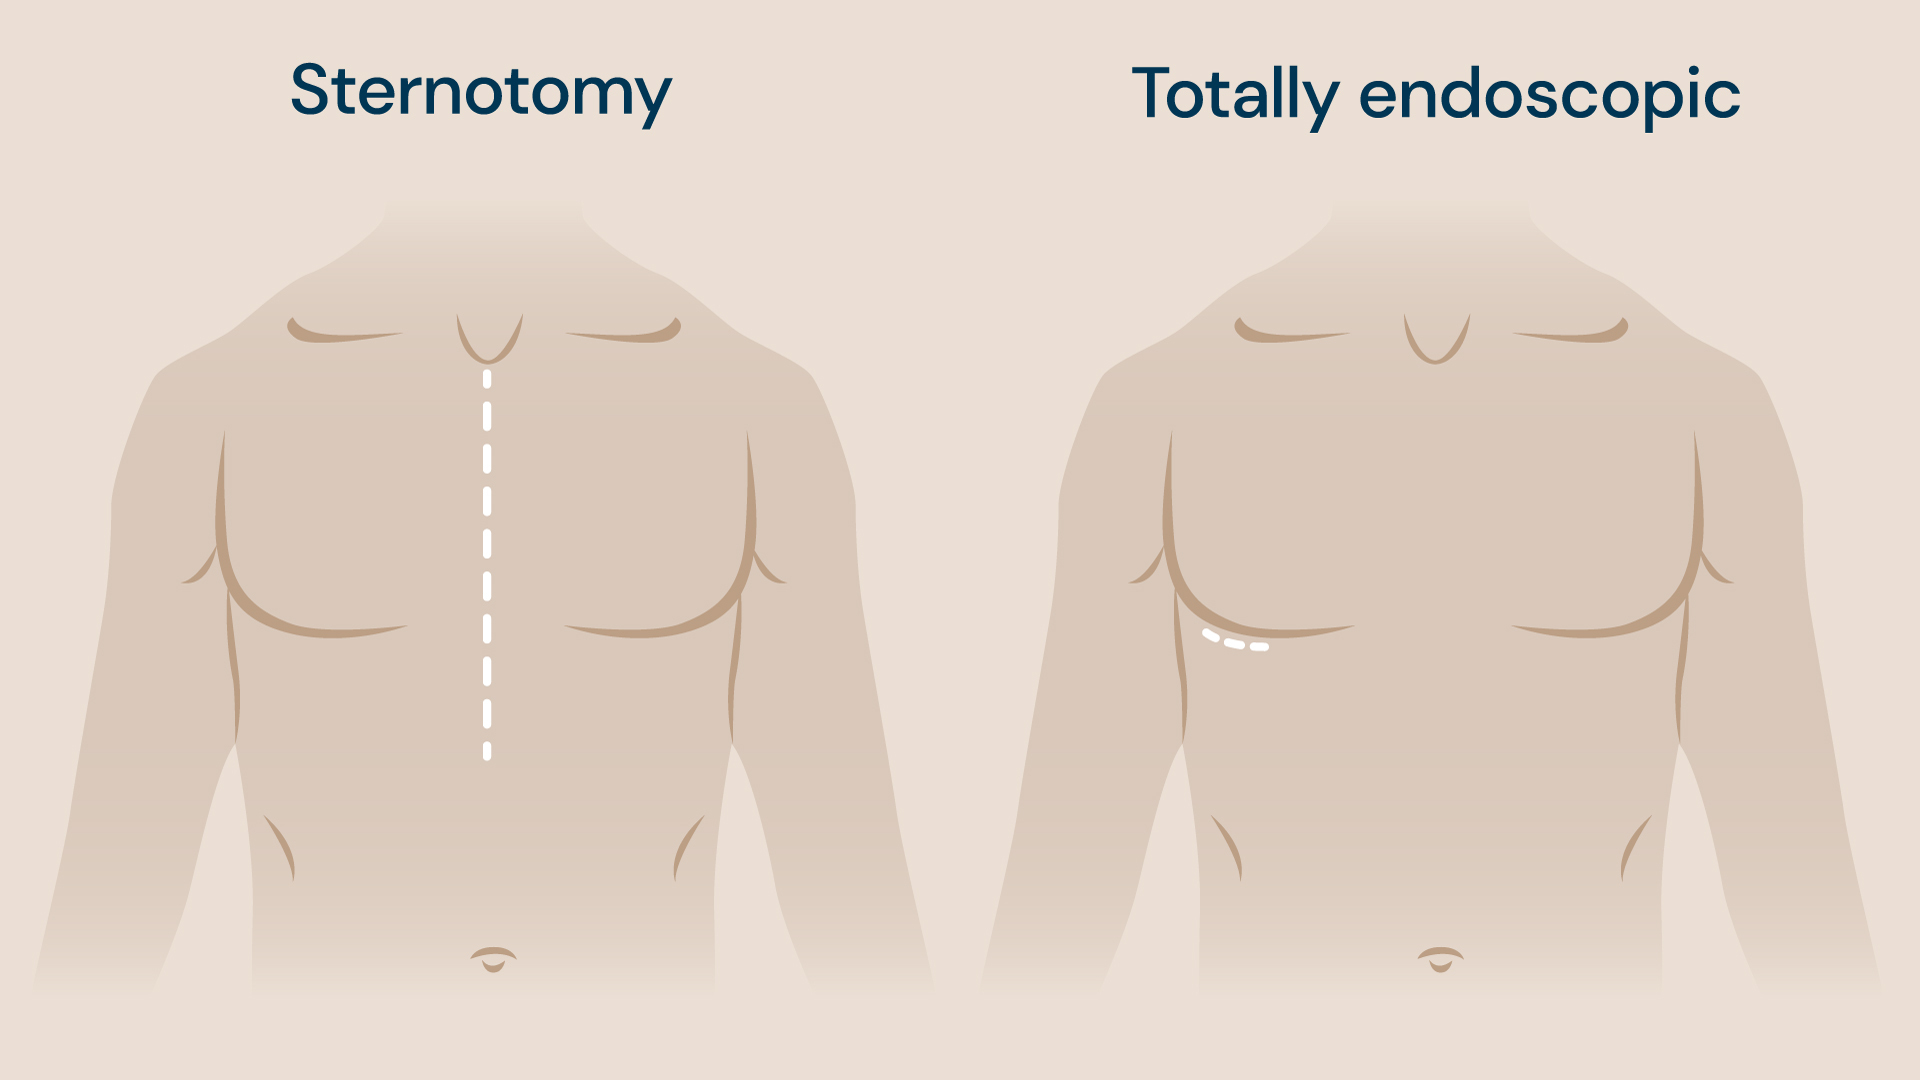 Totally endoscopic surgery vs sternotomy